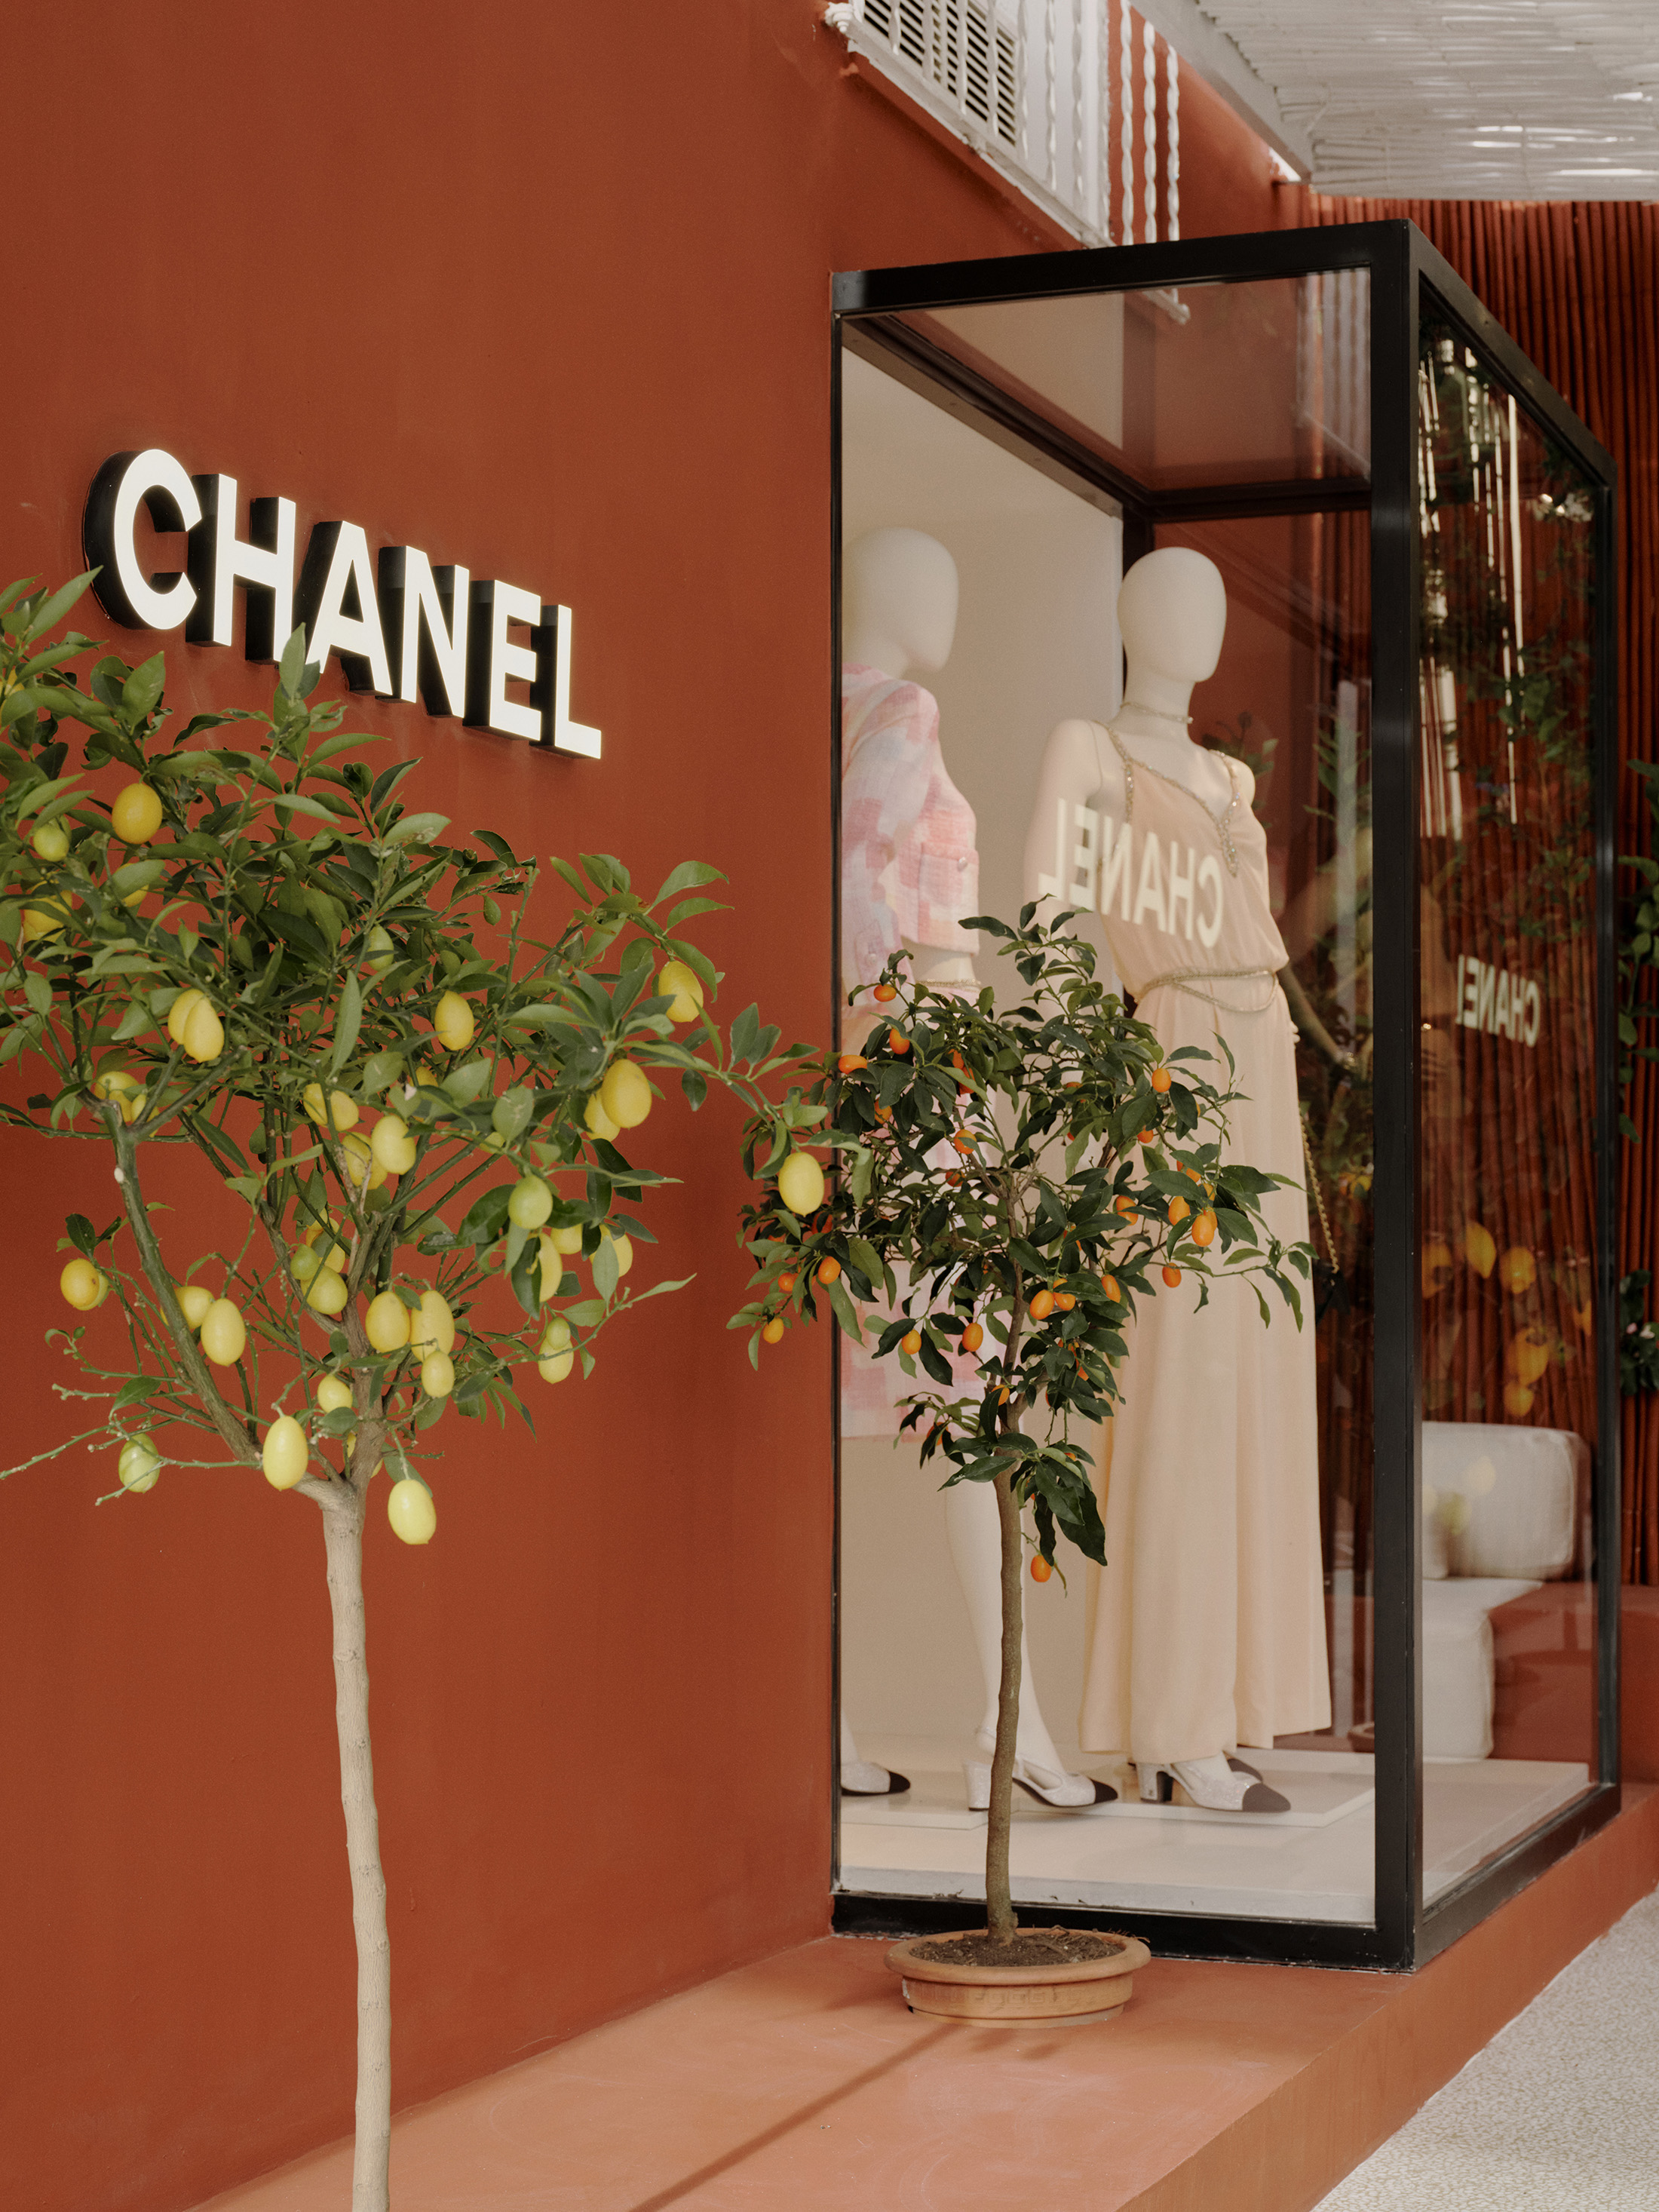 Chanel Boutique in Capri